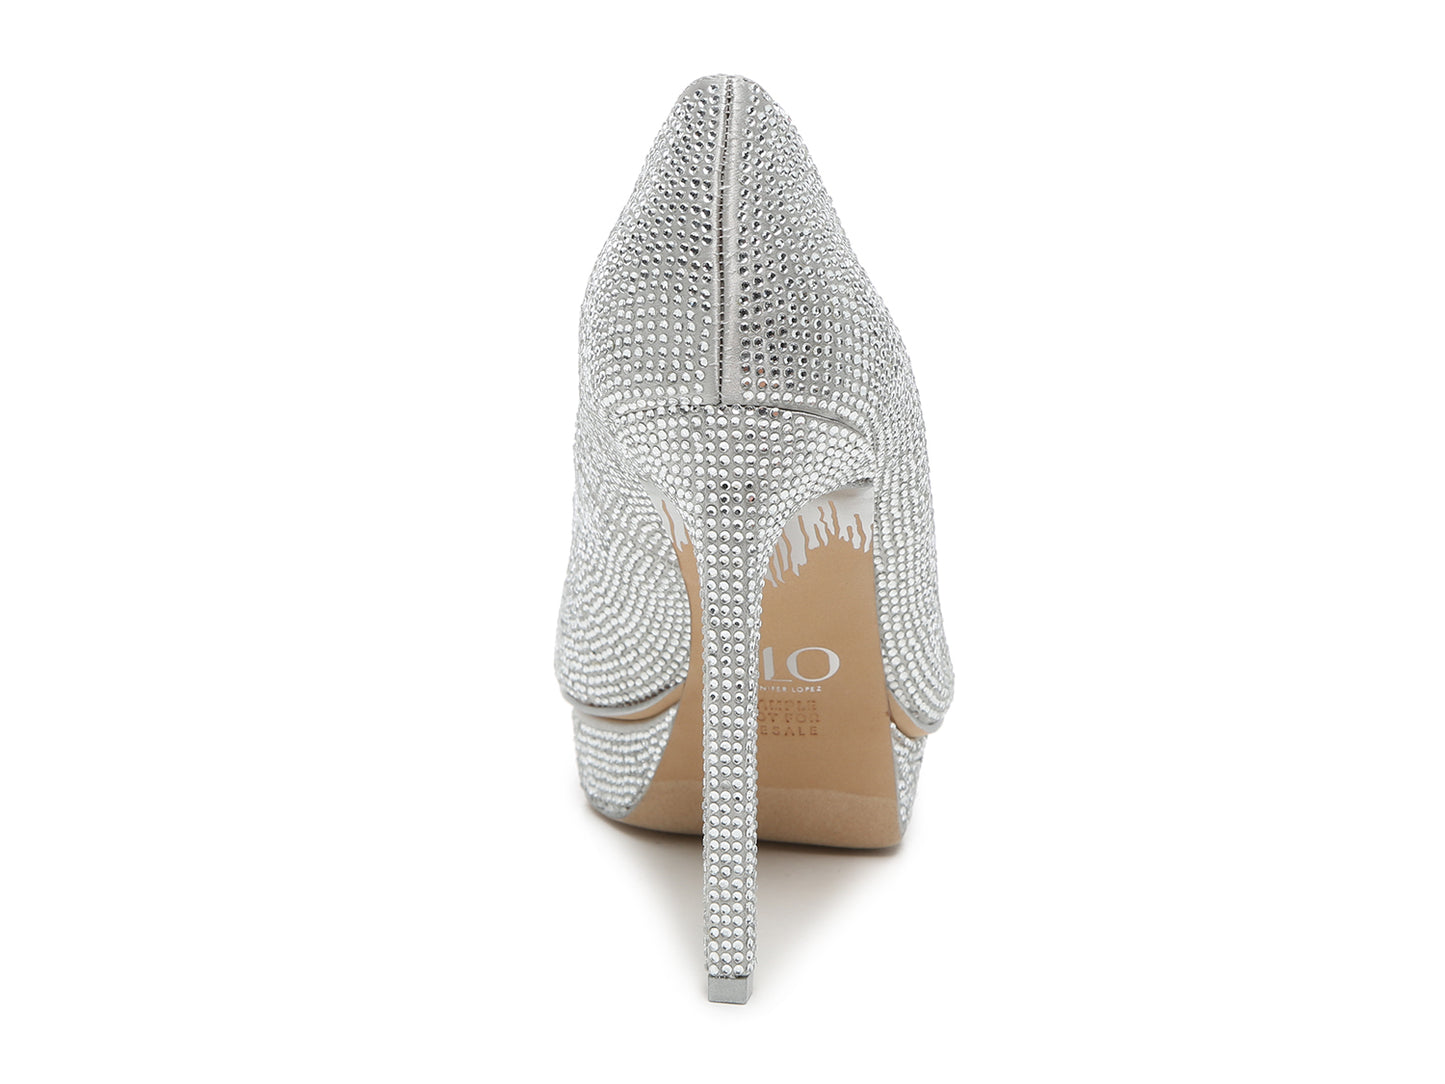 Jennifer Lopex by JLO heels, size 37.5